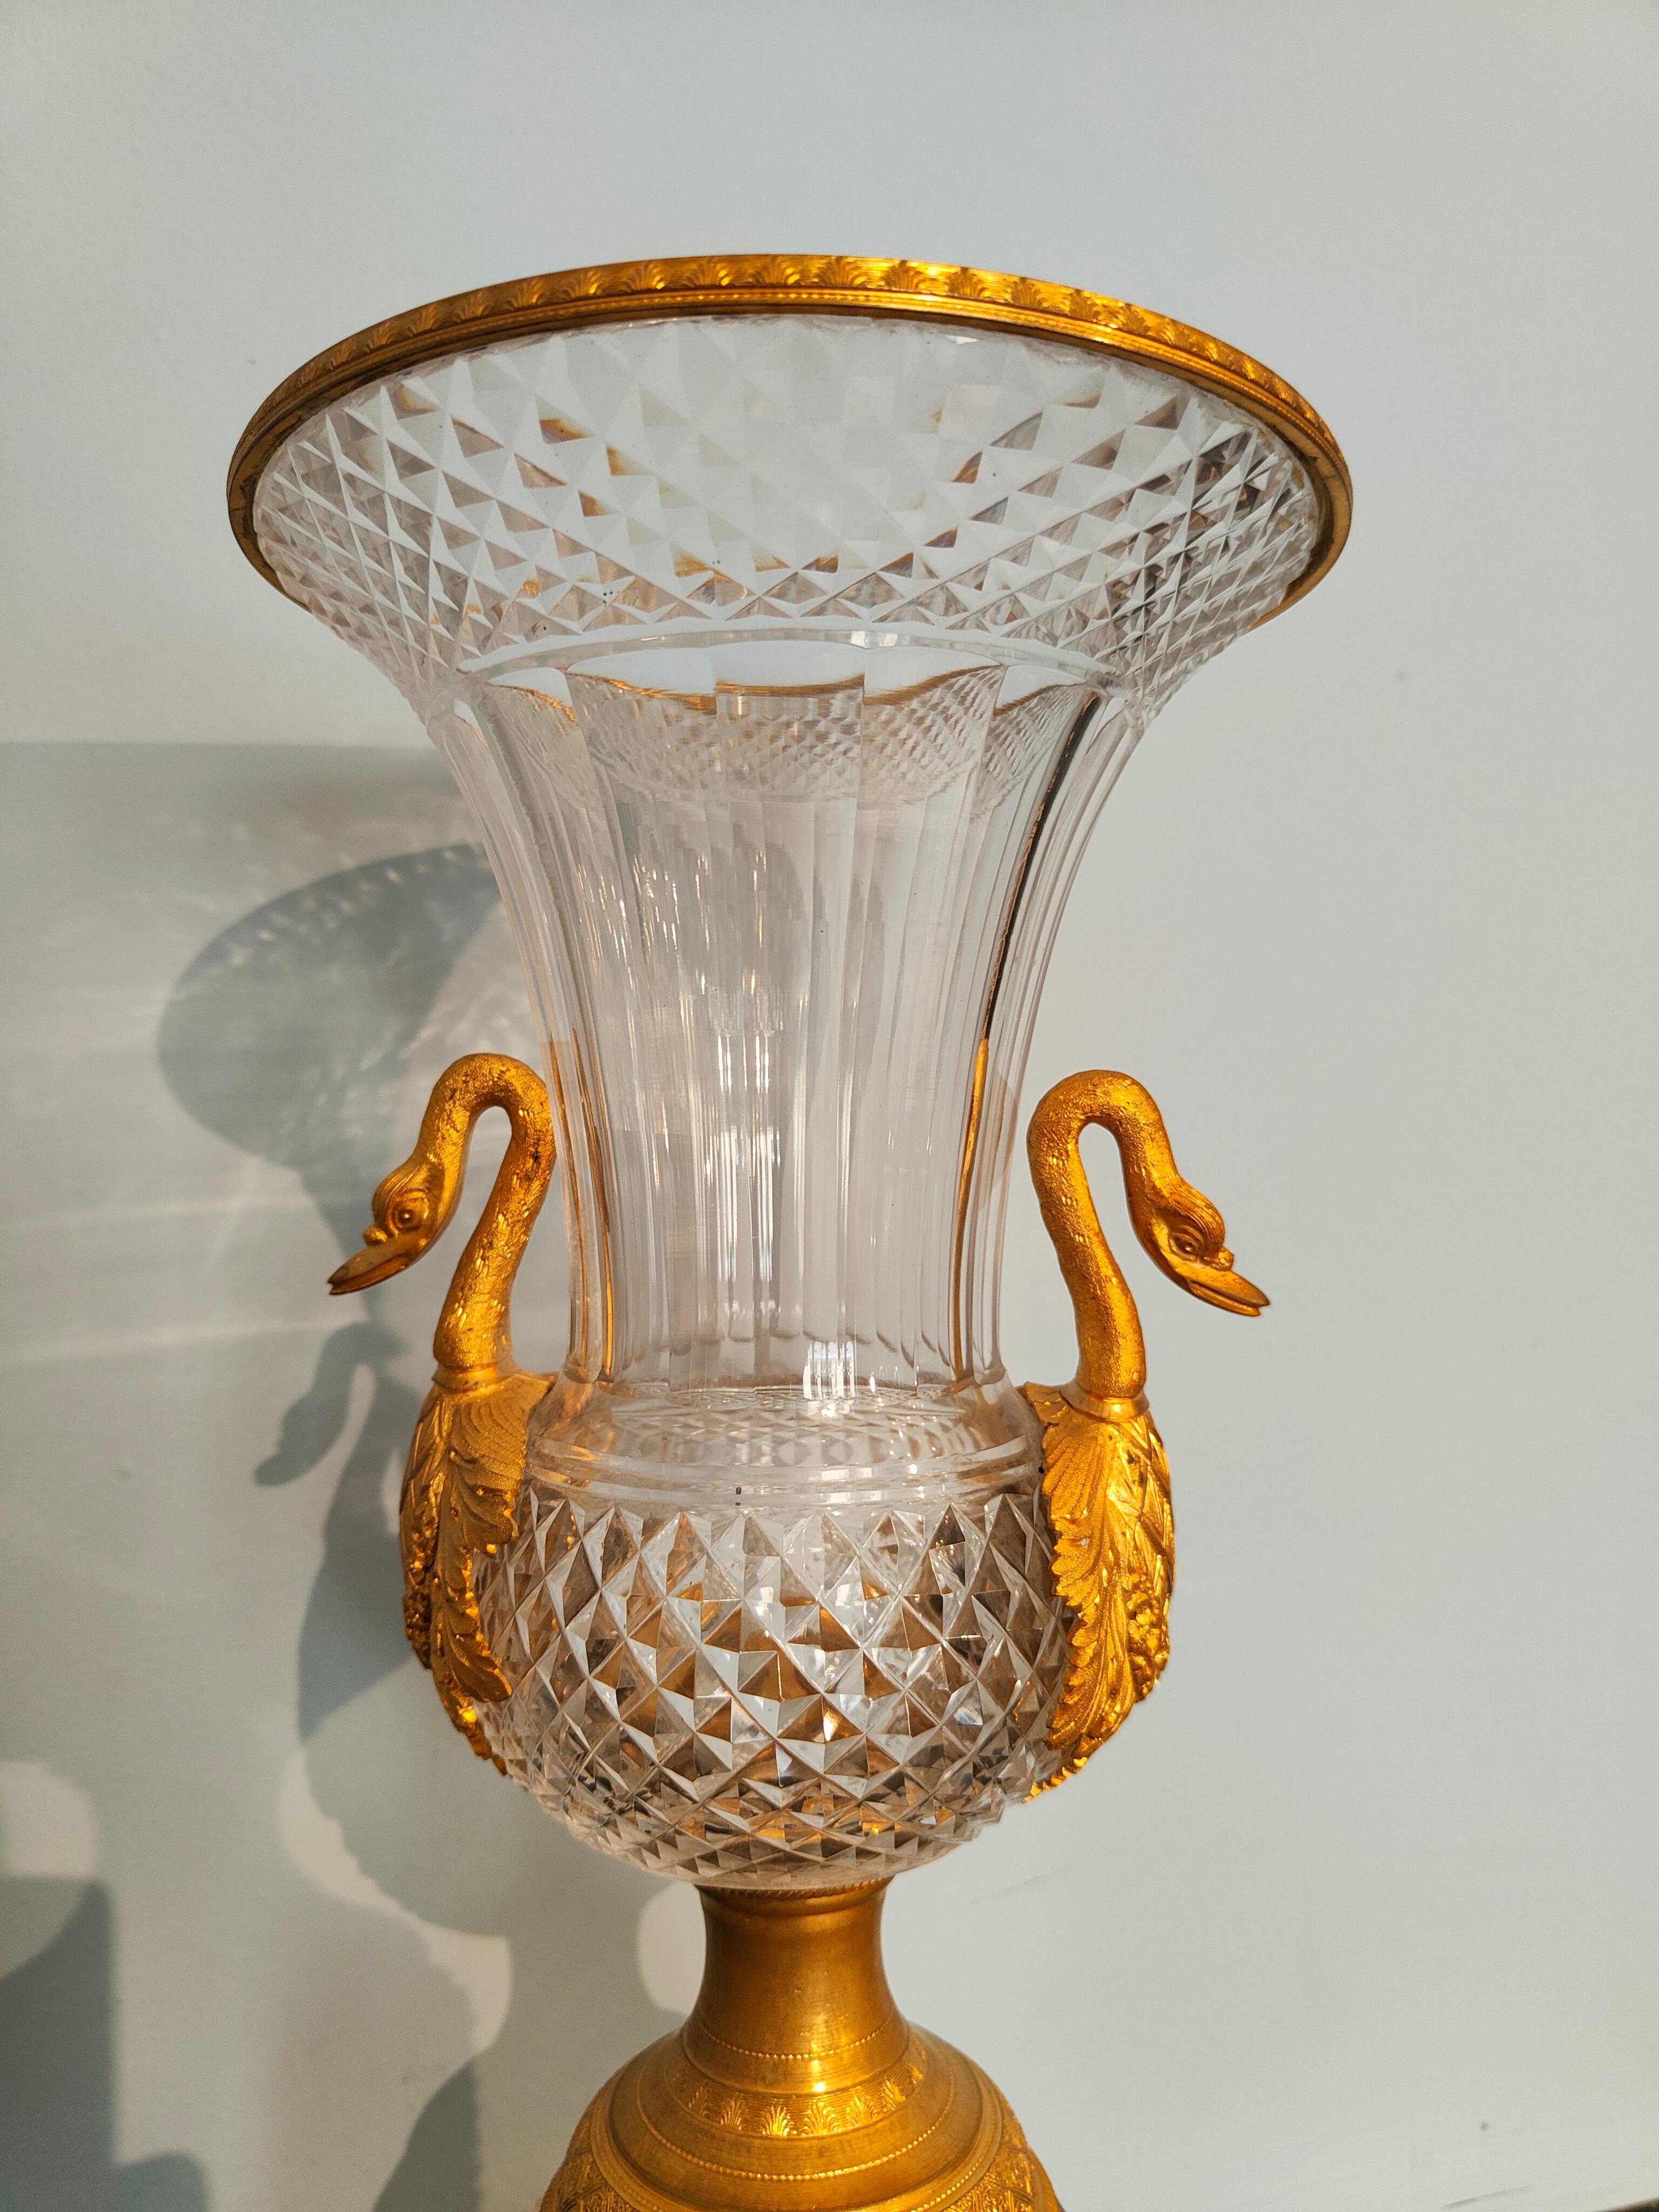 Paire de vases en cristal et bronze d'époque Empire.
Importante paire de vases d'époque Empire fabriqués en France dans la première moitié du XIXe siècle. 
Les vases sont en cristal taillé raffiné (présumé de fabrication russe) avec des greffes en